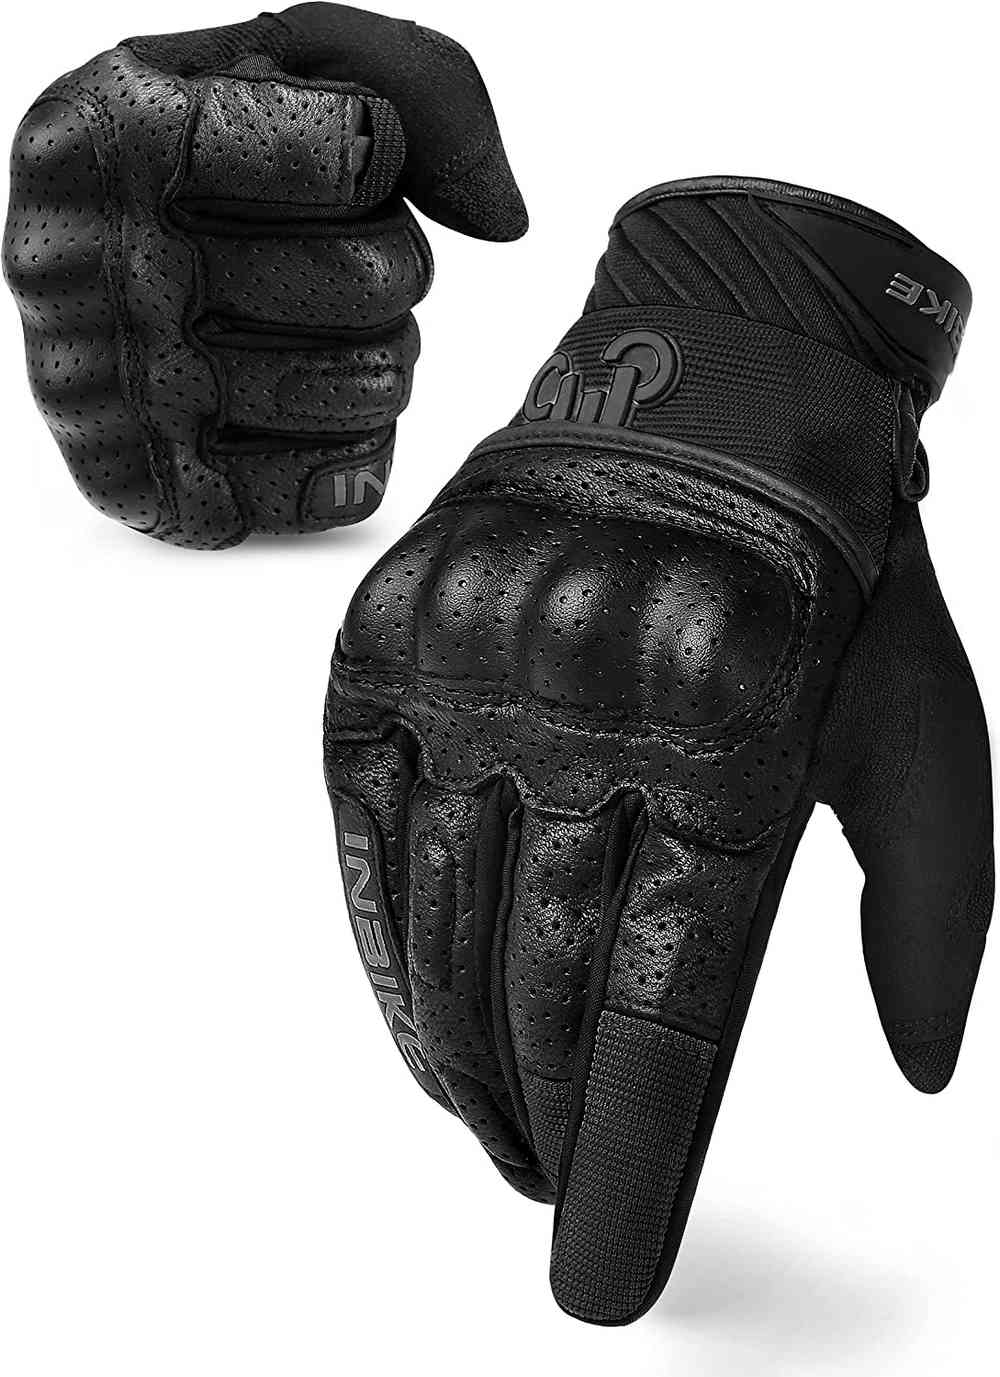 Los mejores guantes para moto para tus manos